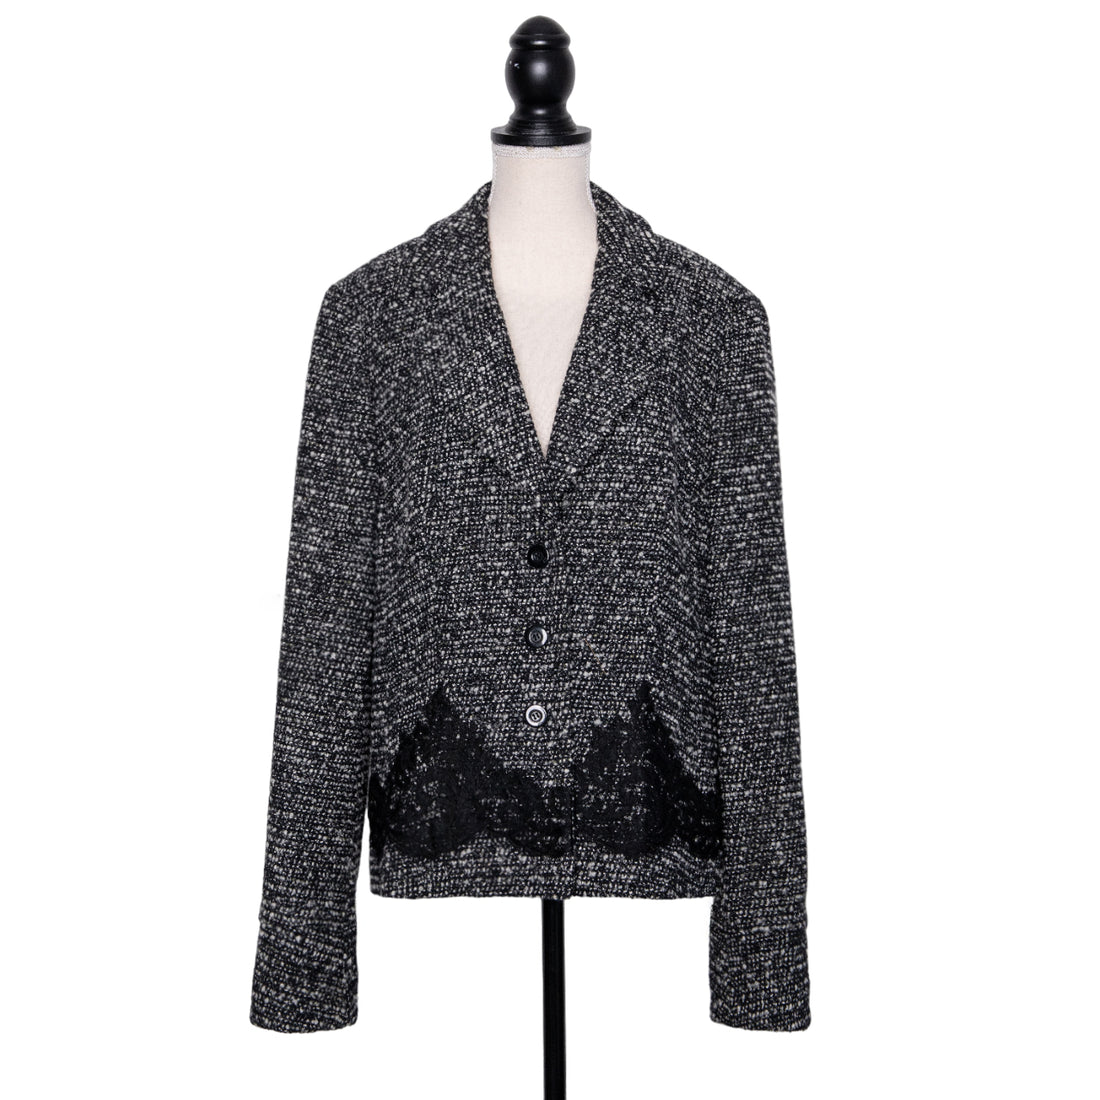 Escada vintage tweed blazer with lace details